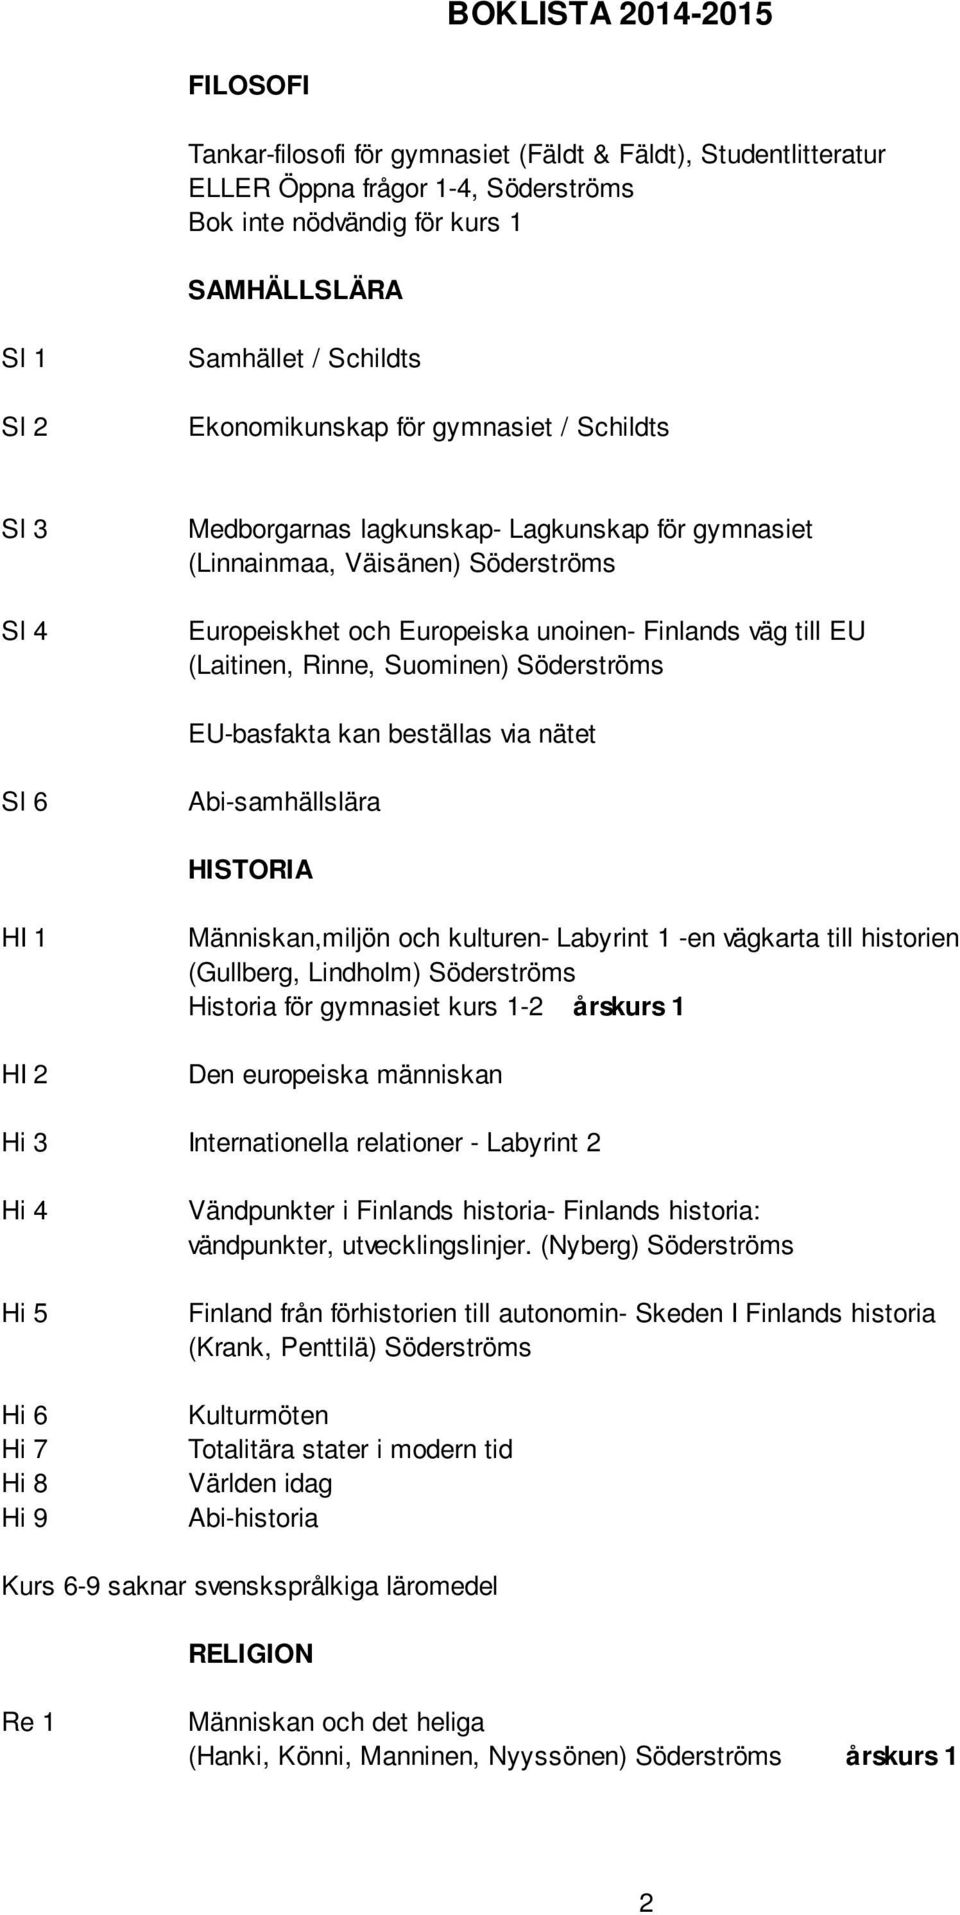 Rinne, Suominen) Söderströms EU-basfakta kan beställas via nätet Sl 6 Abi-samhällslära HISTORIA HI 1 HI Människan,miljön och kulturen- Labyrint 1 -en vägkarta till historien (Gullberg, Lindholm)